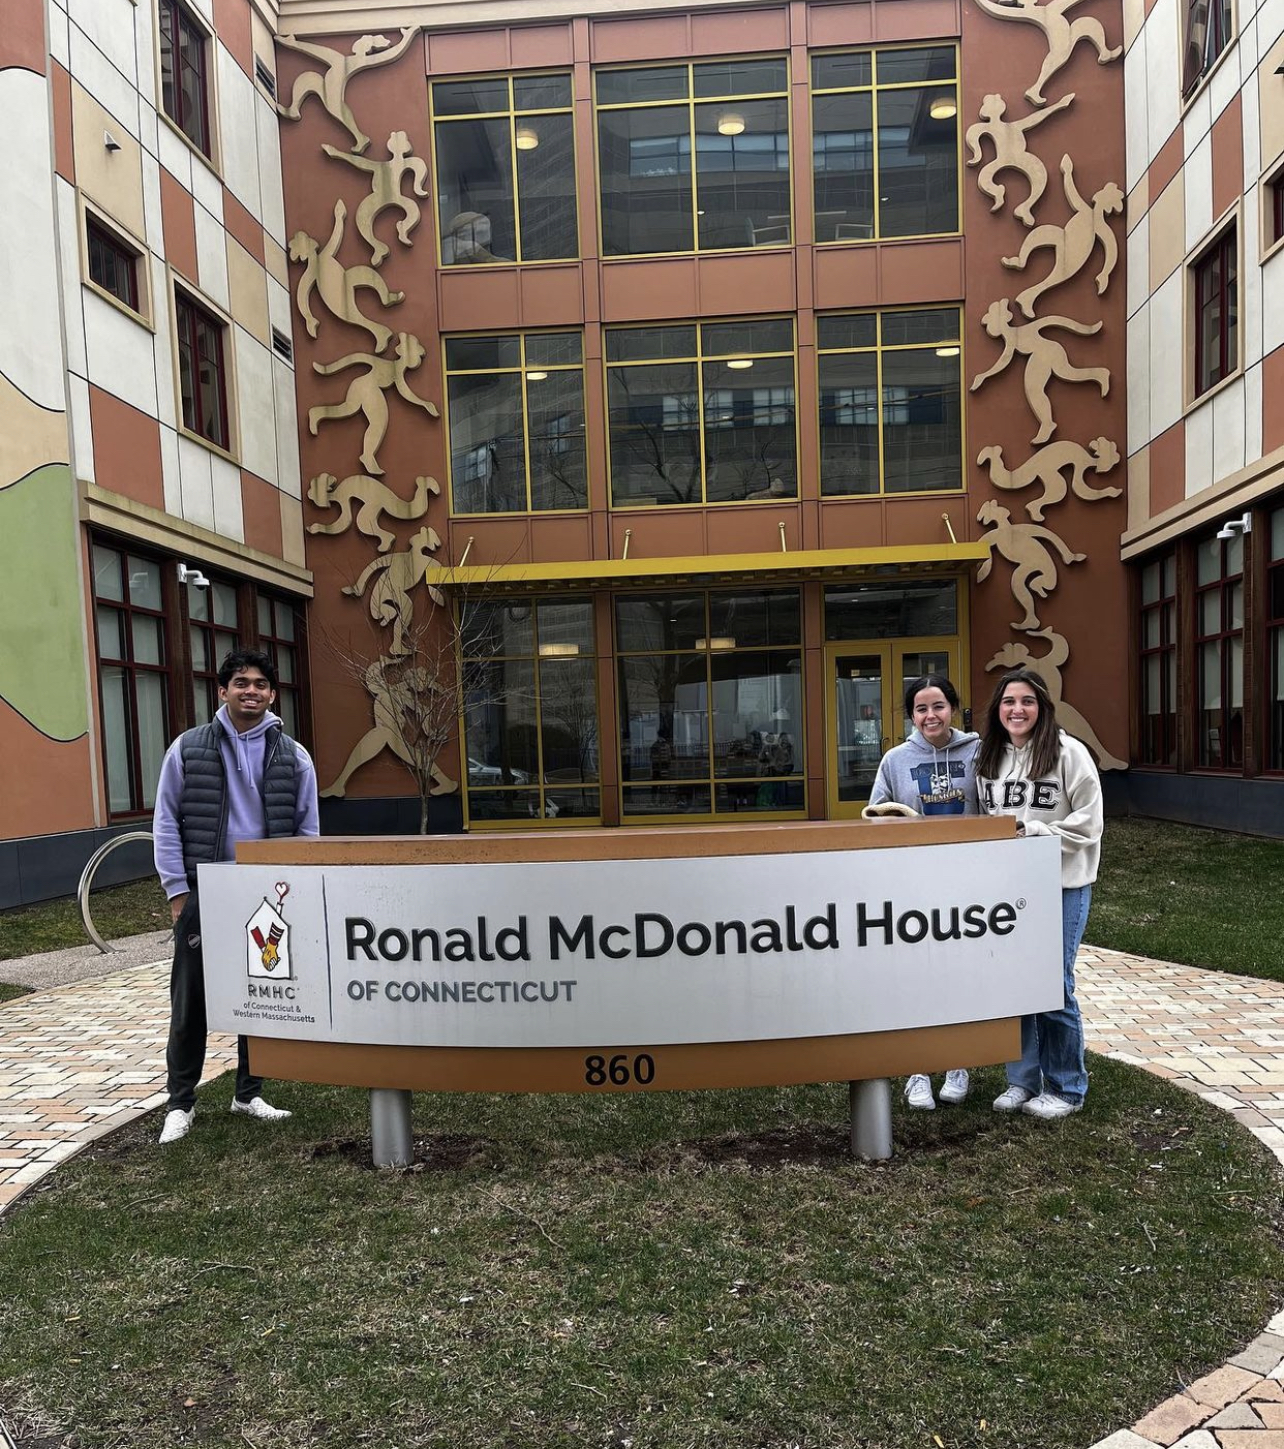 Ronald McDonald House 